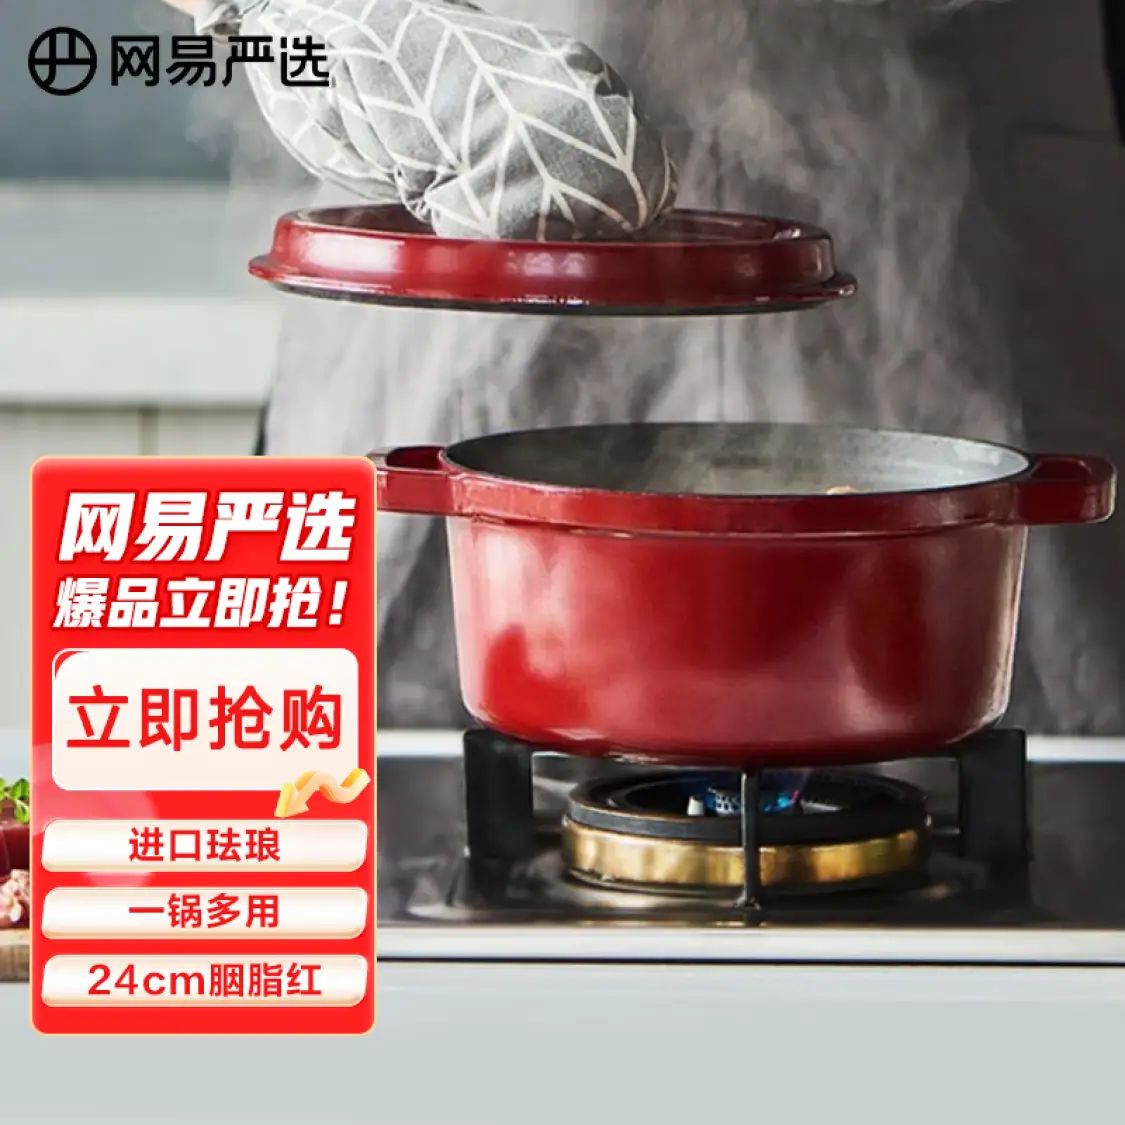 YANXUAN 网易严选 100年传世珐琅锅进口 胭脂红24cm 165.2元